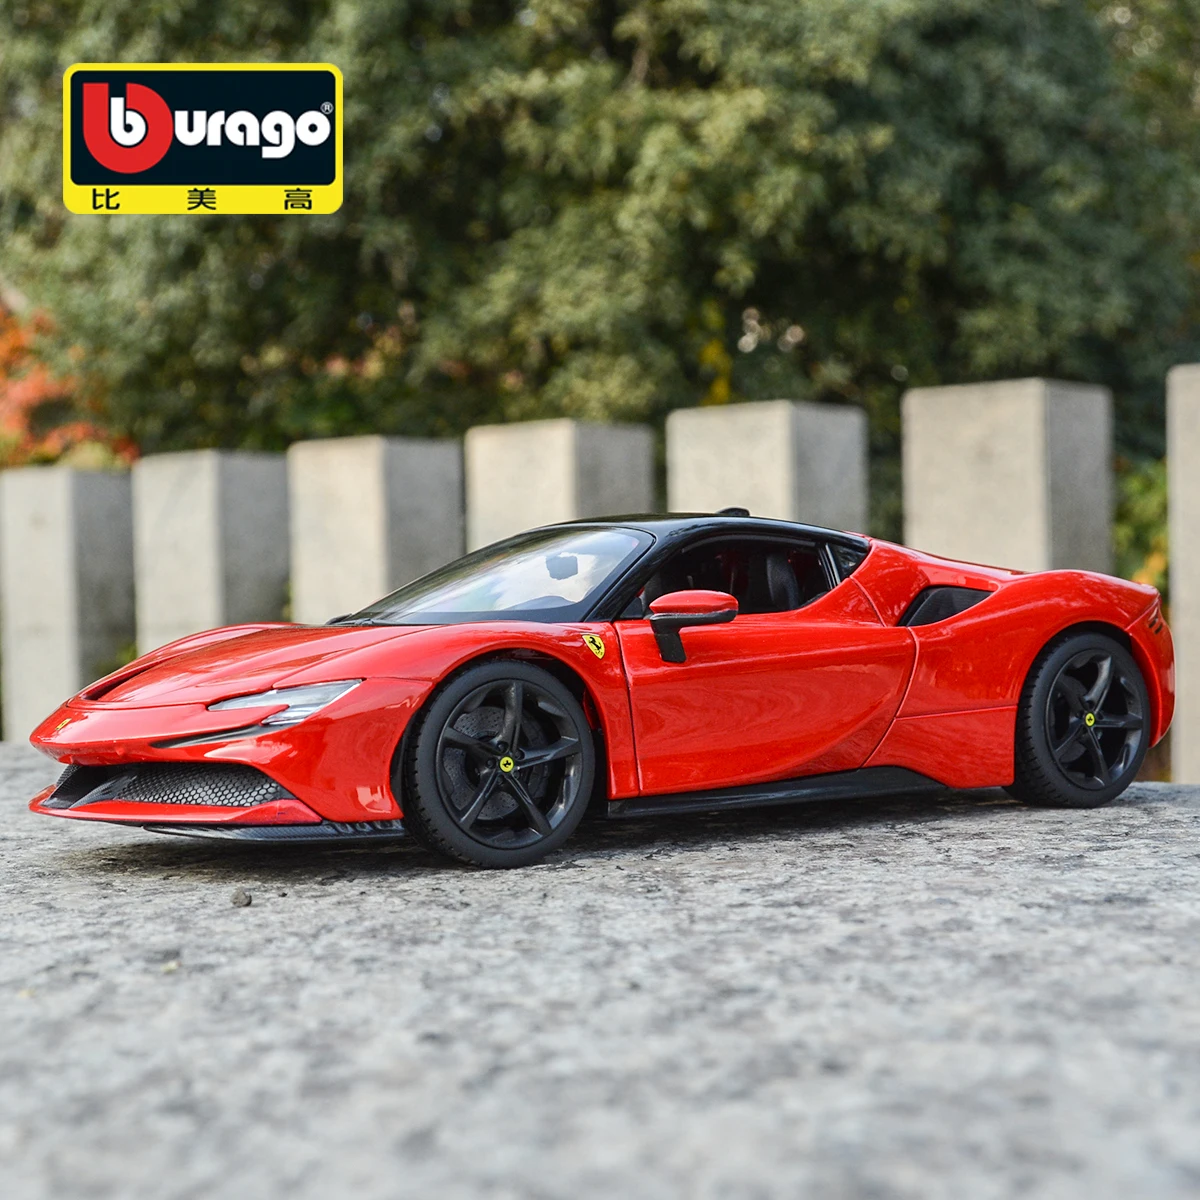 

Bburago 1:18 Ferrari SF90 Stradale спортивный автомобиль статическая имитация литые Автомобили Коллекционная модель автомобиля игрушки